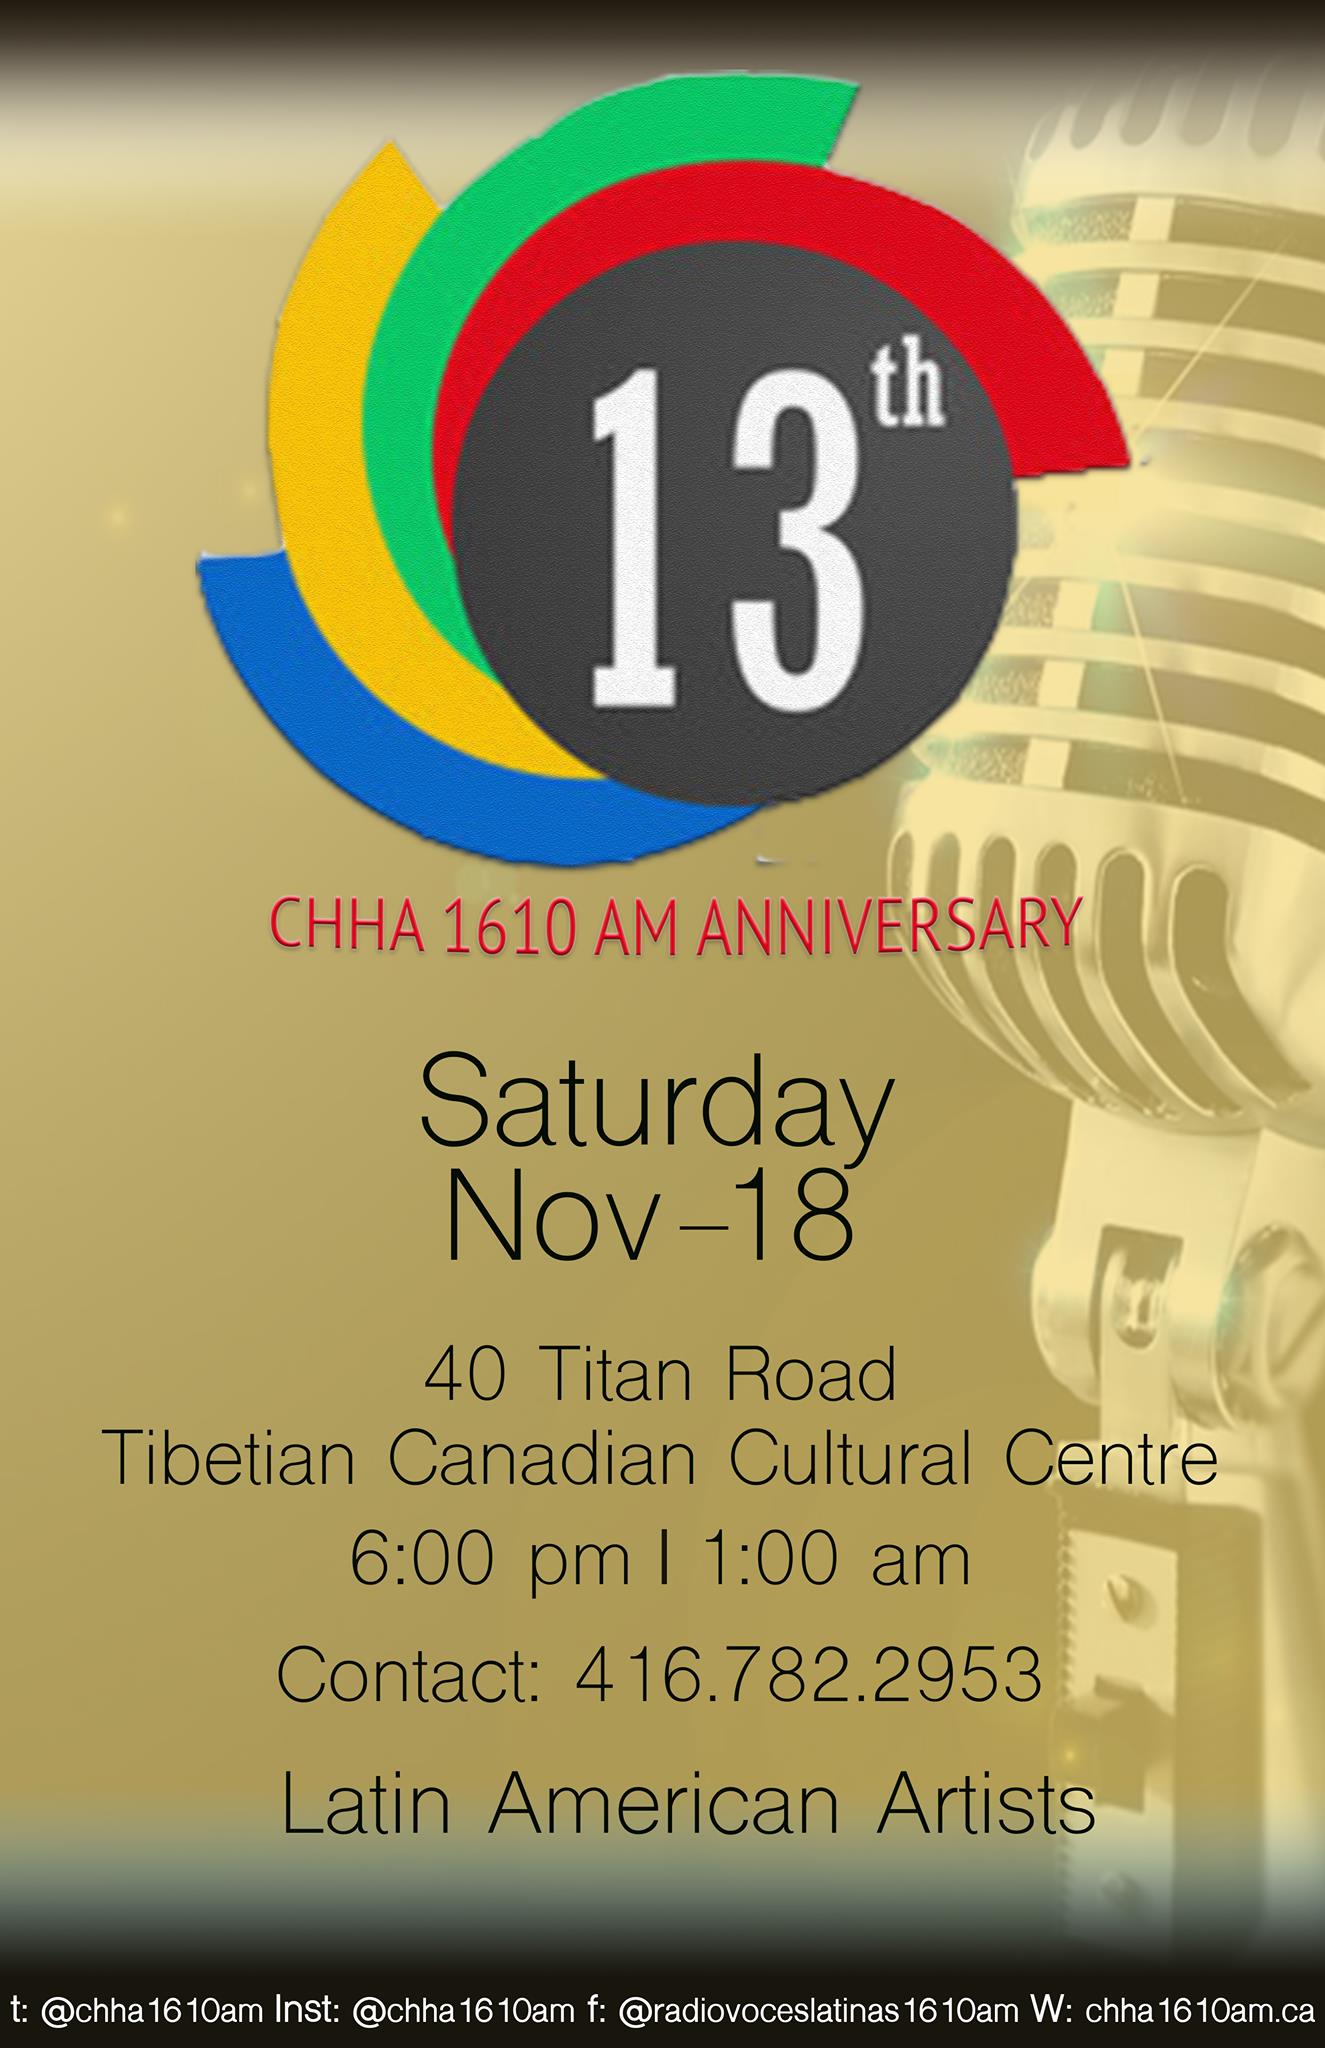 CHHA 1610 AM Radio Voces Latinas celebra su aniversario número 13 en espectacular evento